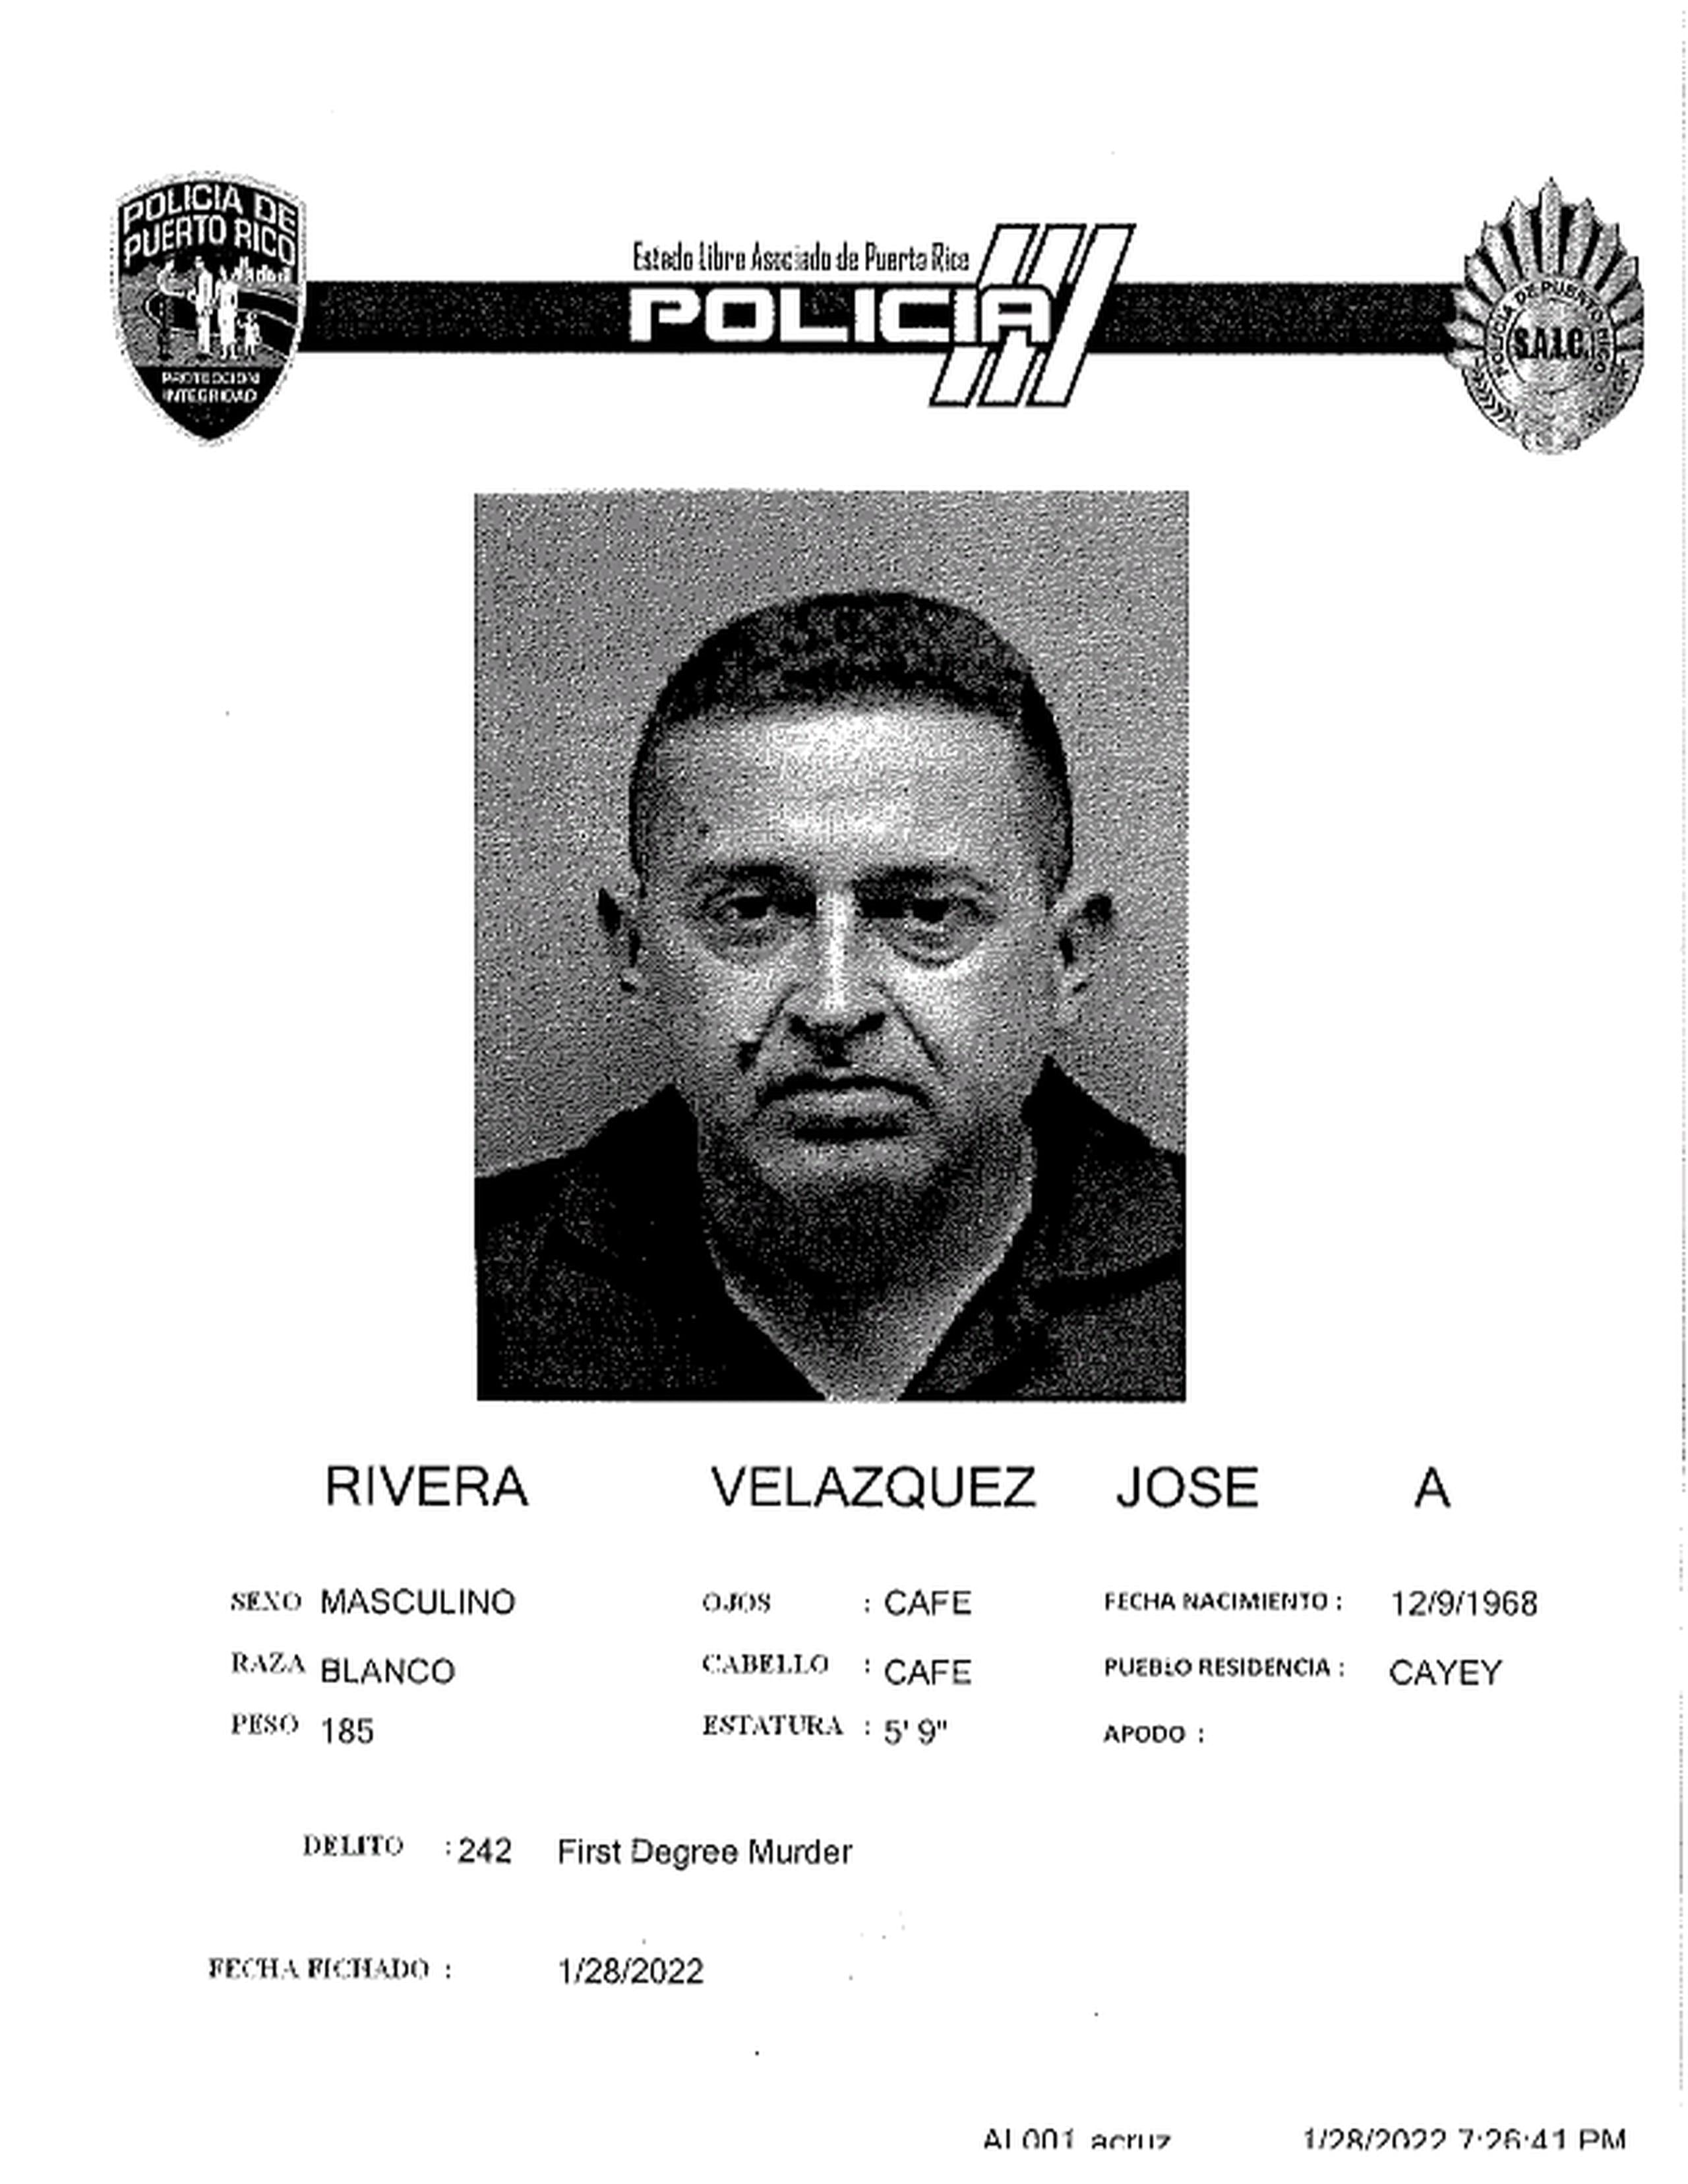 José A. Velázquez Rivera